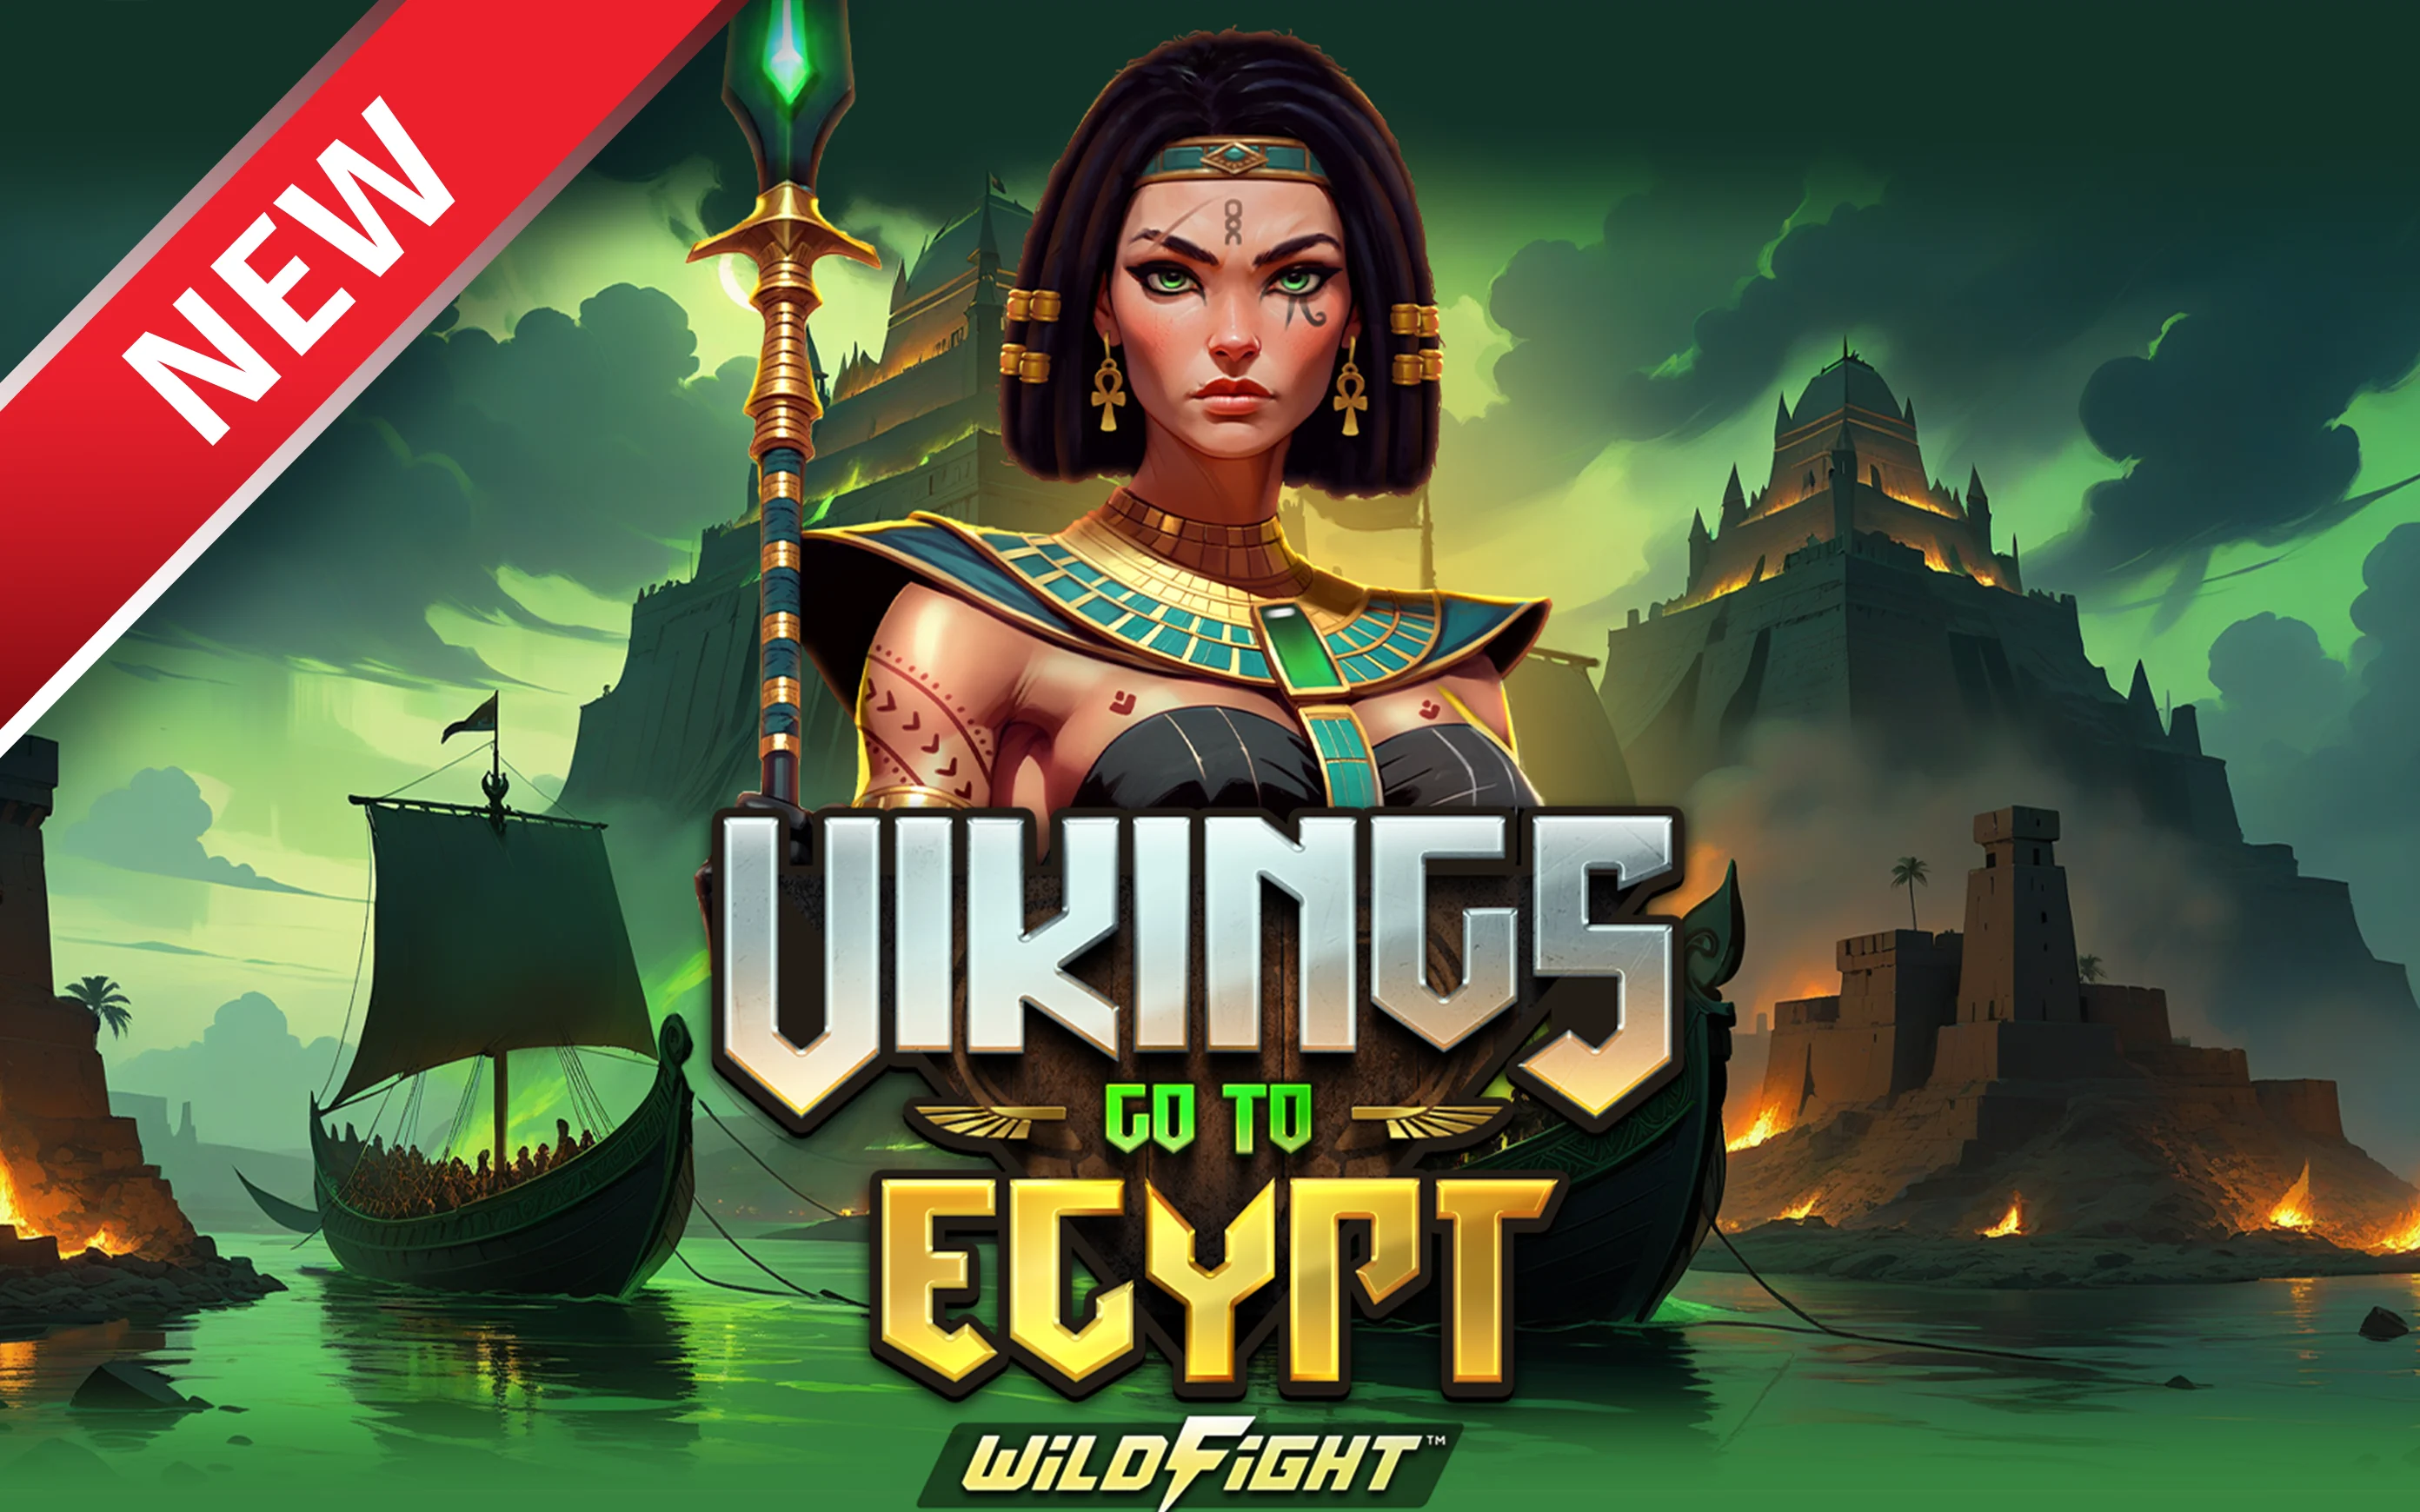 Luaj Vikings Go To Egypt Wild Fight!™ në kazino Starcasino.be në internet